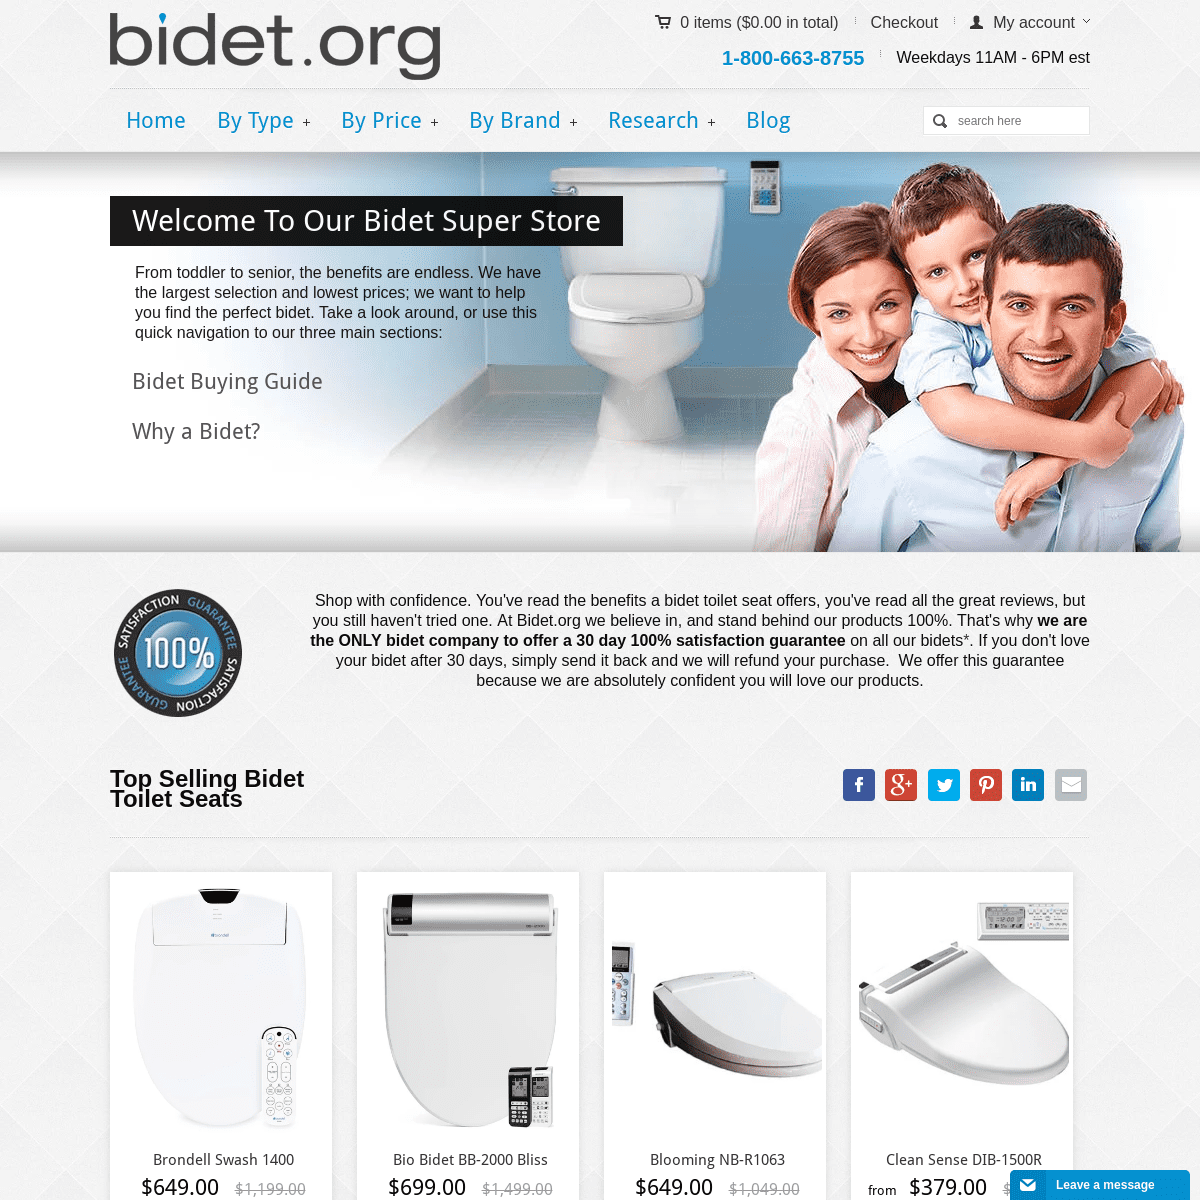 A complete backup of bidet.org